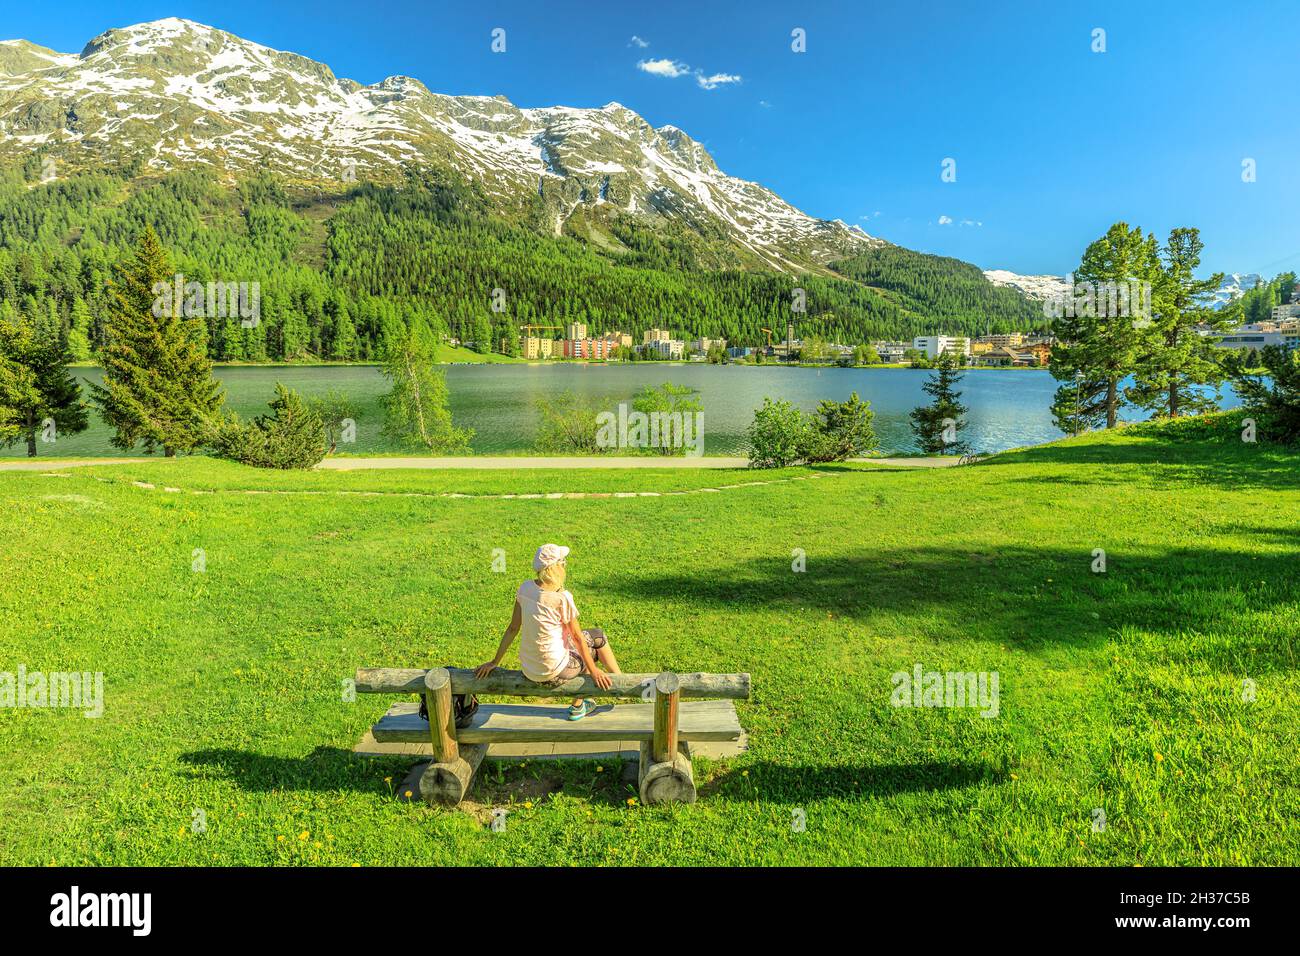 Femme de tourisme assise dans le parc de Saint-Moritz près du lac de Saint-Moritz en Suisse.Le lac de Saint-Moritz dans le canton des Grisons, dans la région de Maloja. Banque D'Images